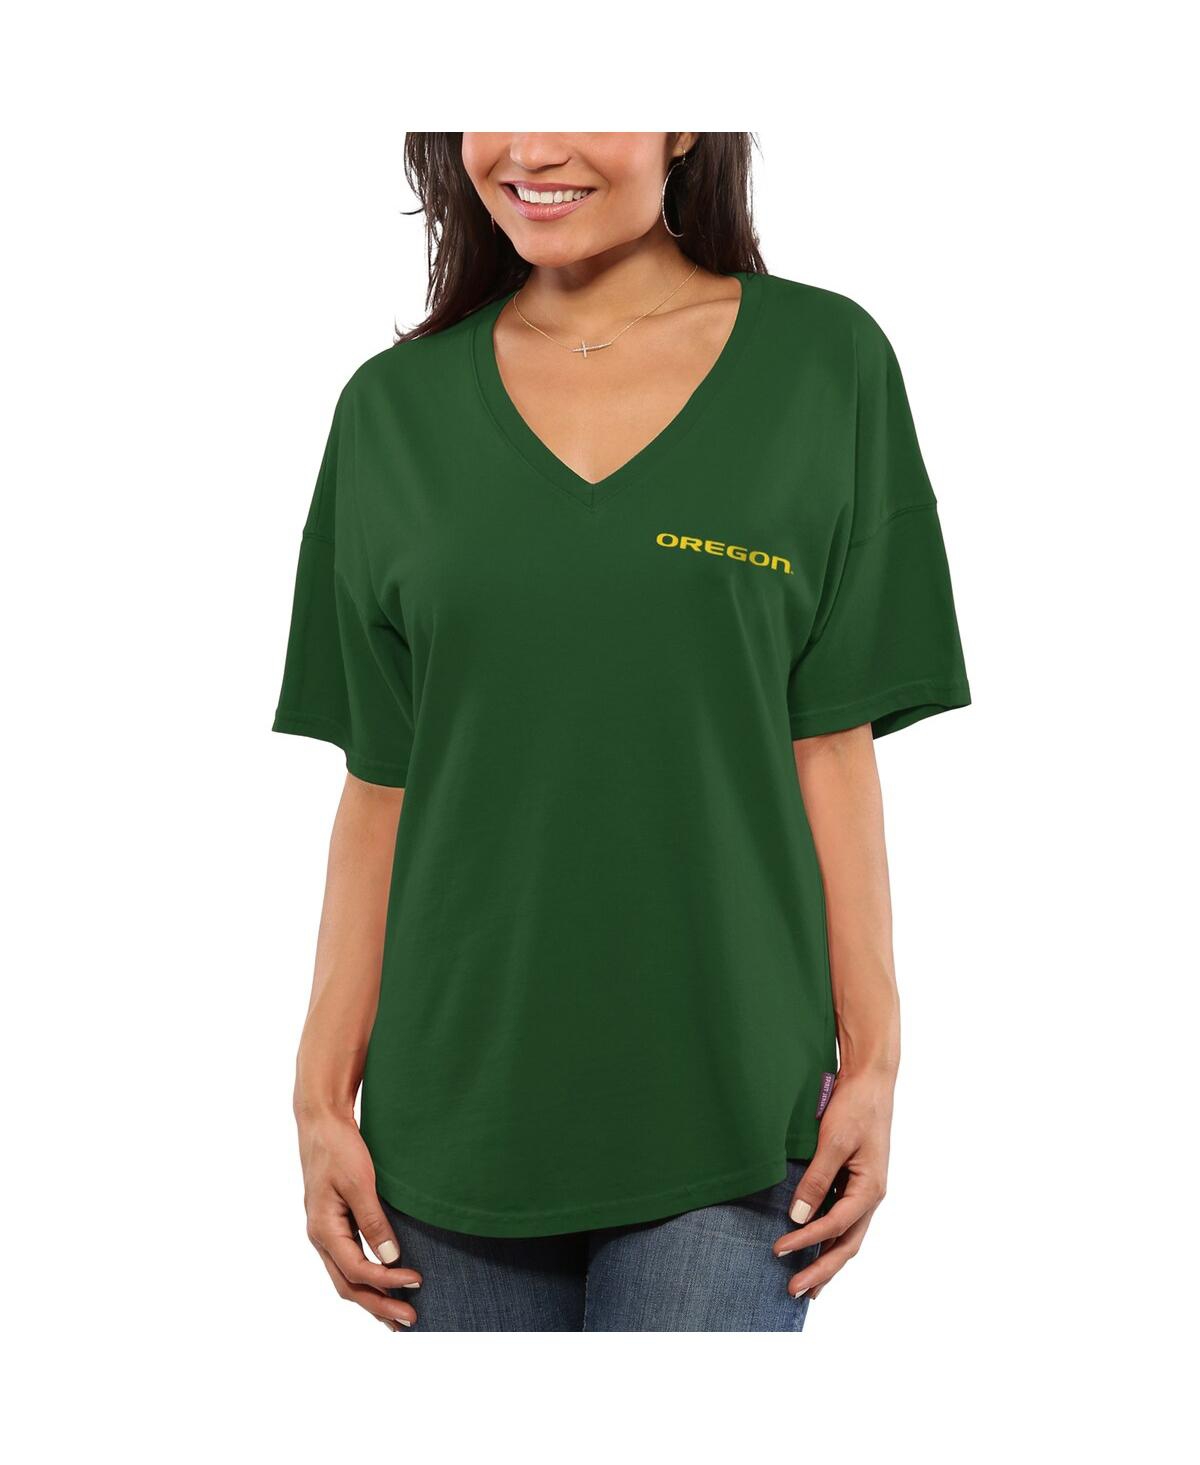 Shop Spirit Jersey Women's Green Oregon Ducks  Oversized T-shirt